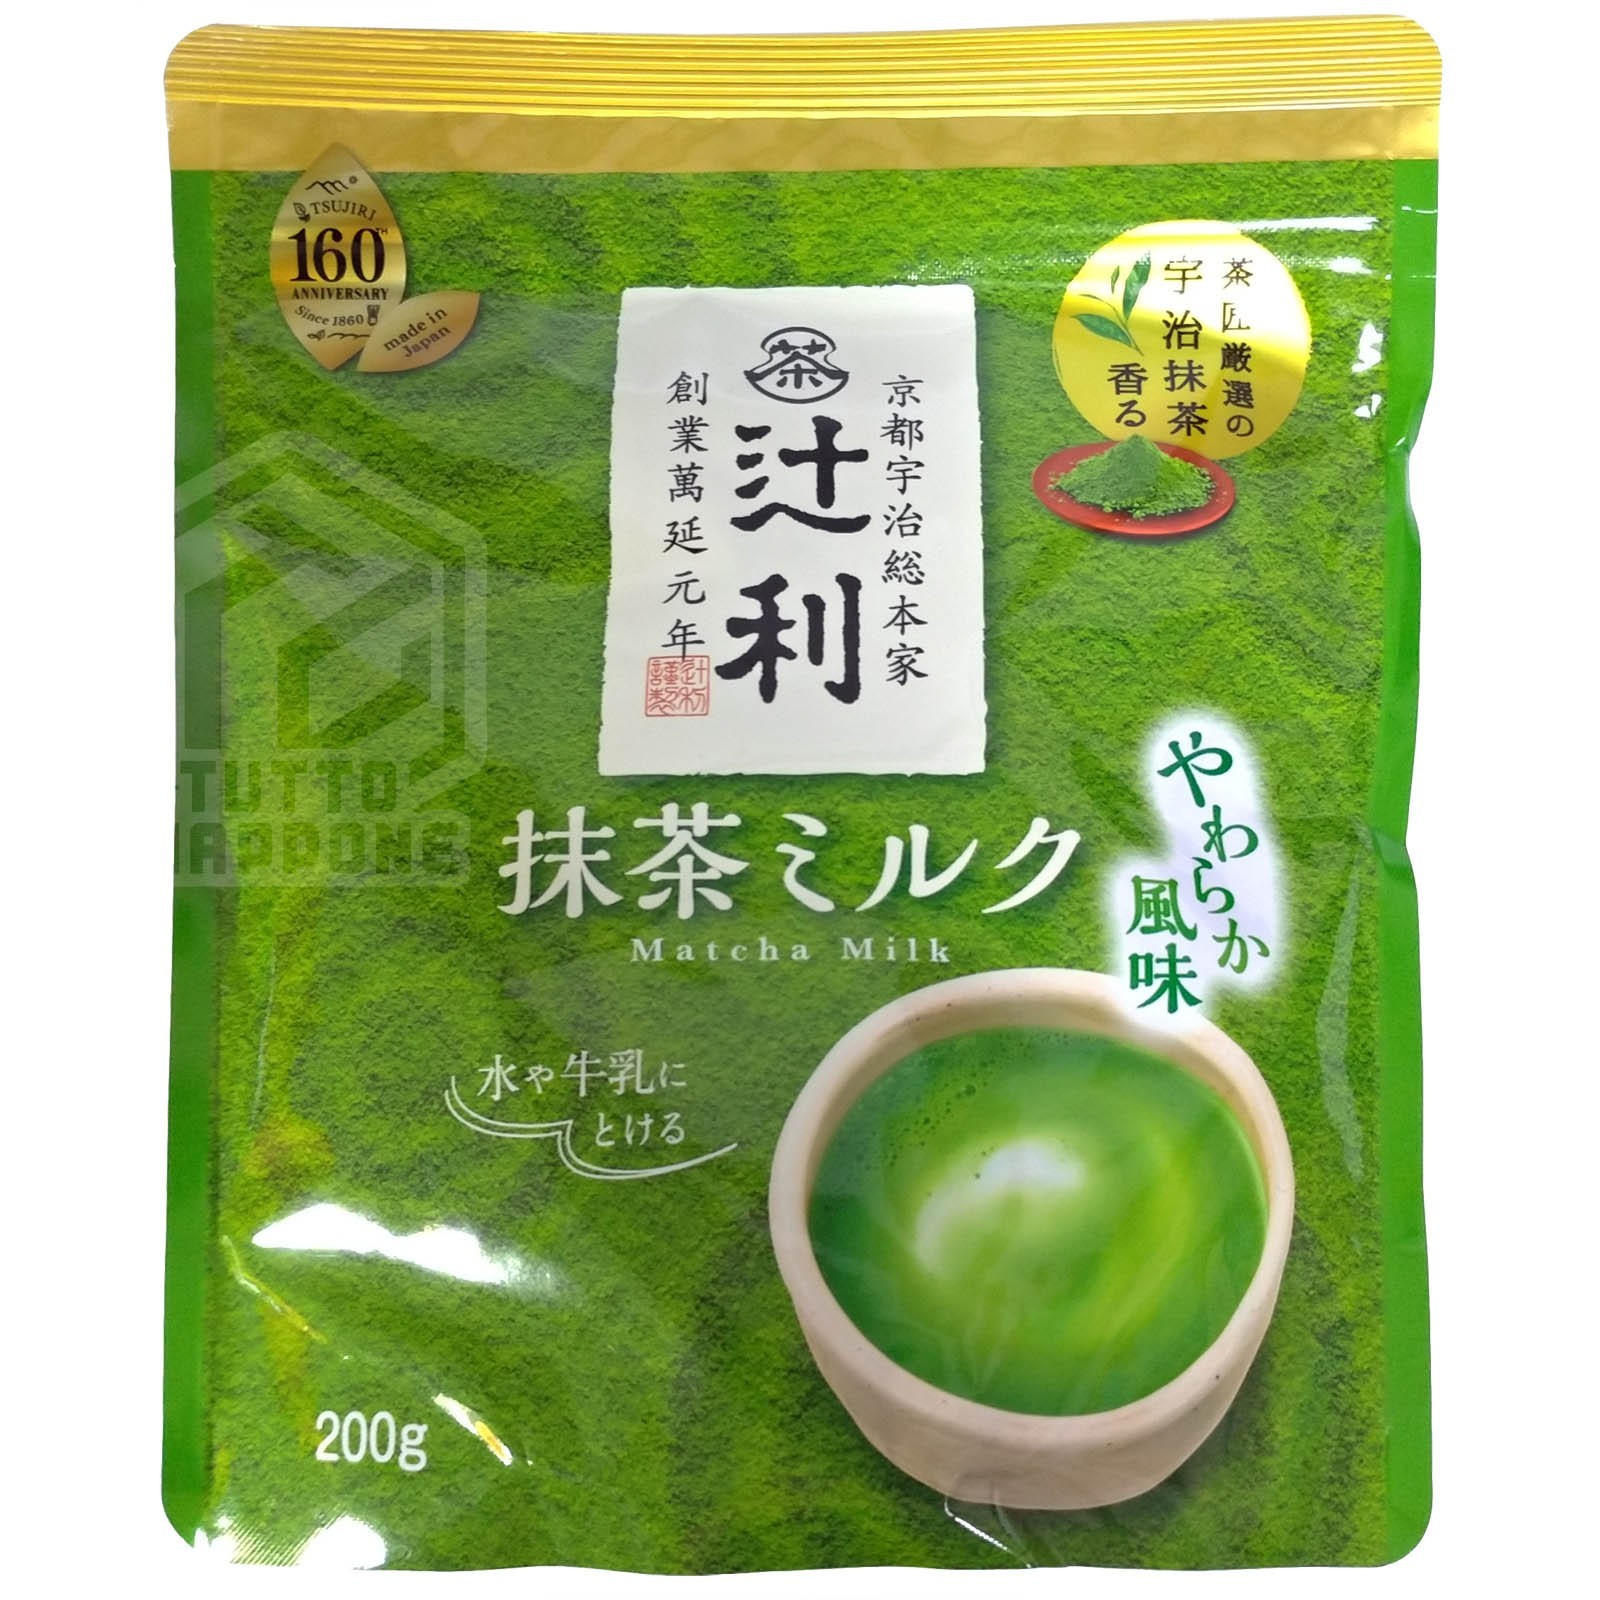 Latte Matcha di Tsujiri, gusto delicato, 200g - TuttoGiappone